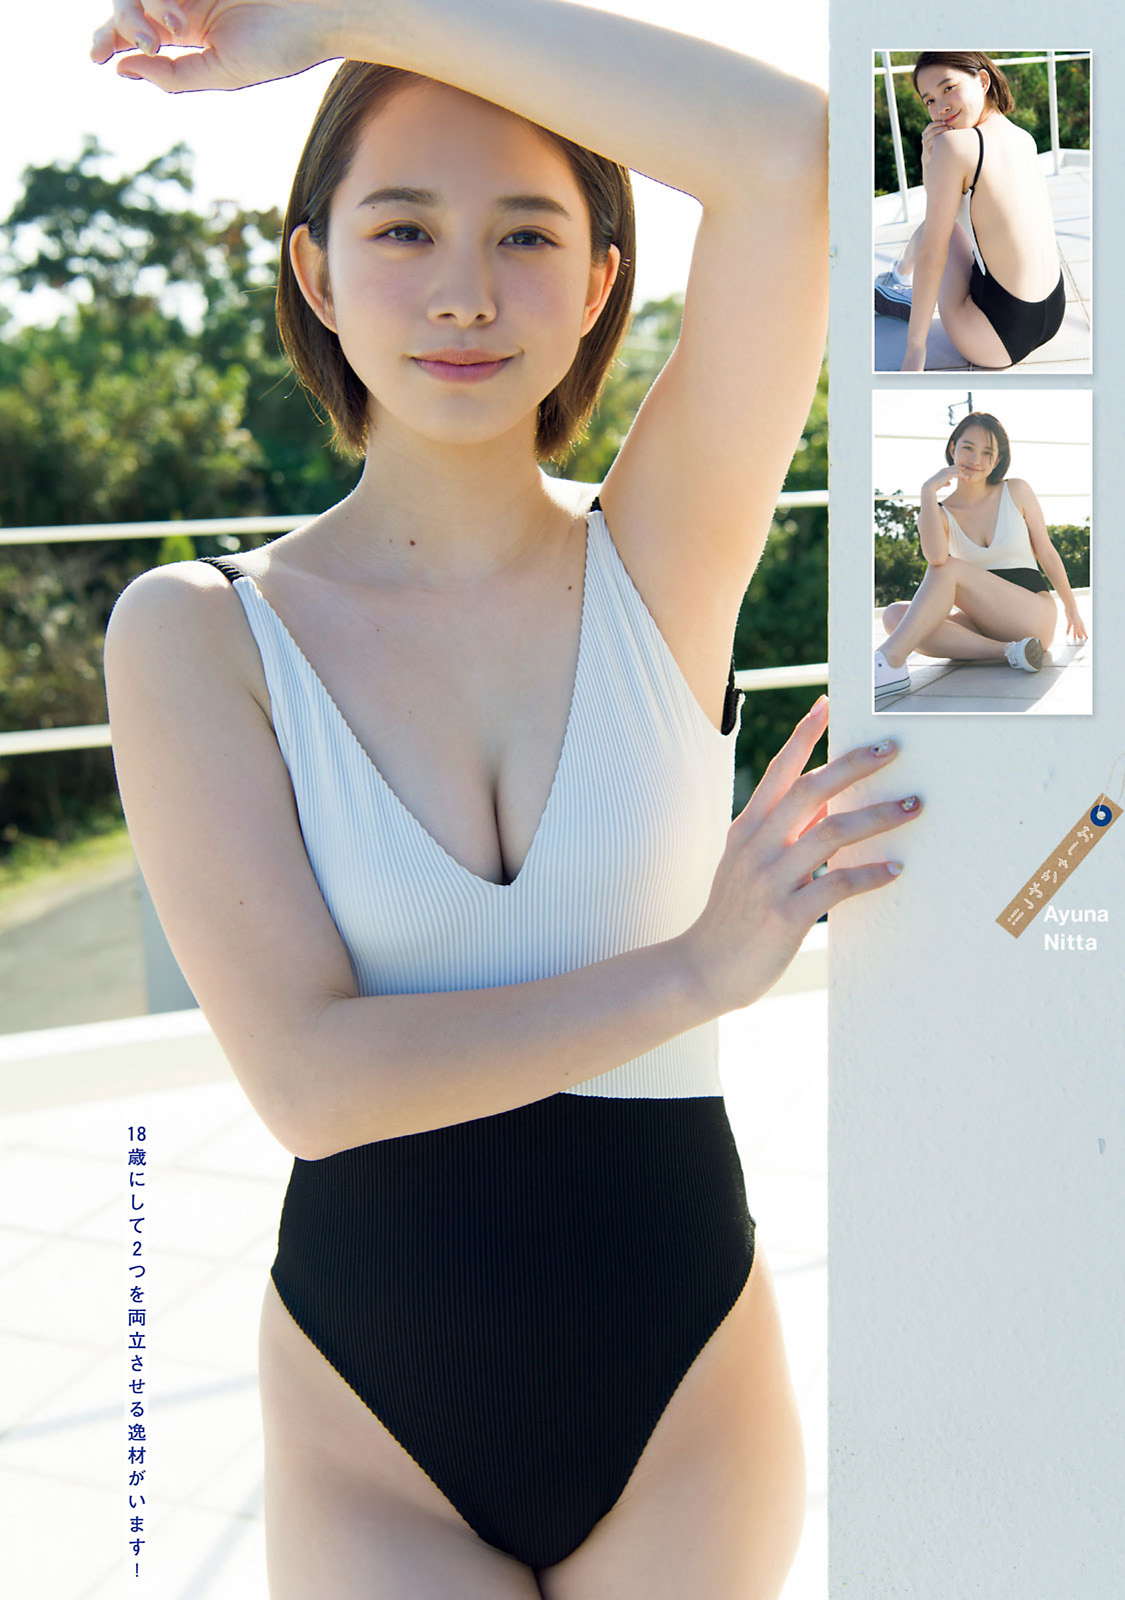 Ayuna Nitta 新田あゆな, Young Magazine 2021 No.13 (ヤングマガジン 2021年13号)